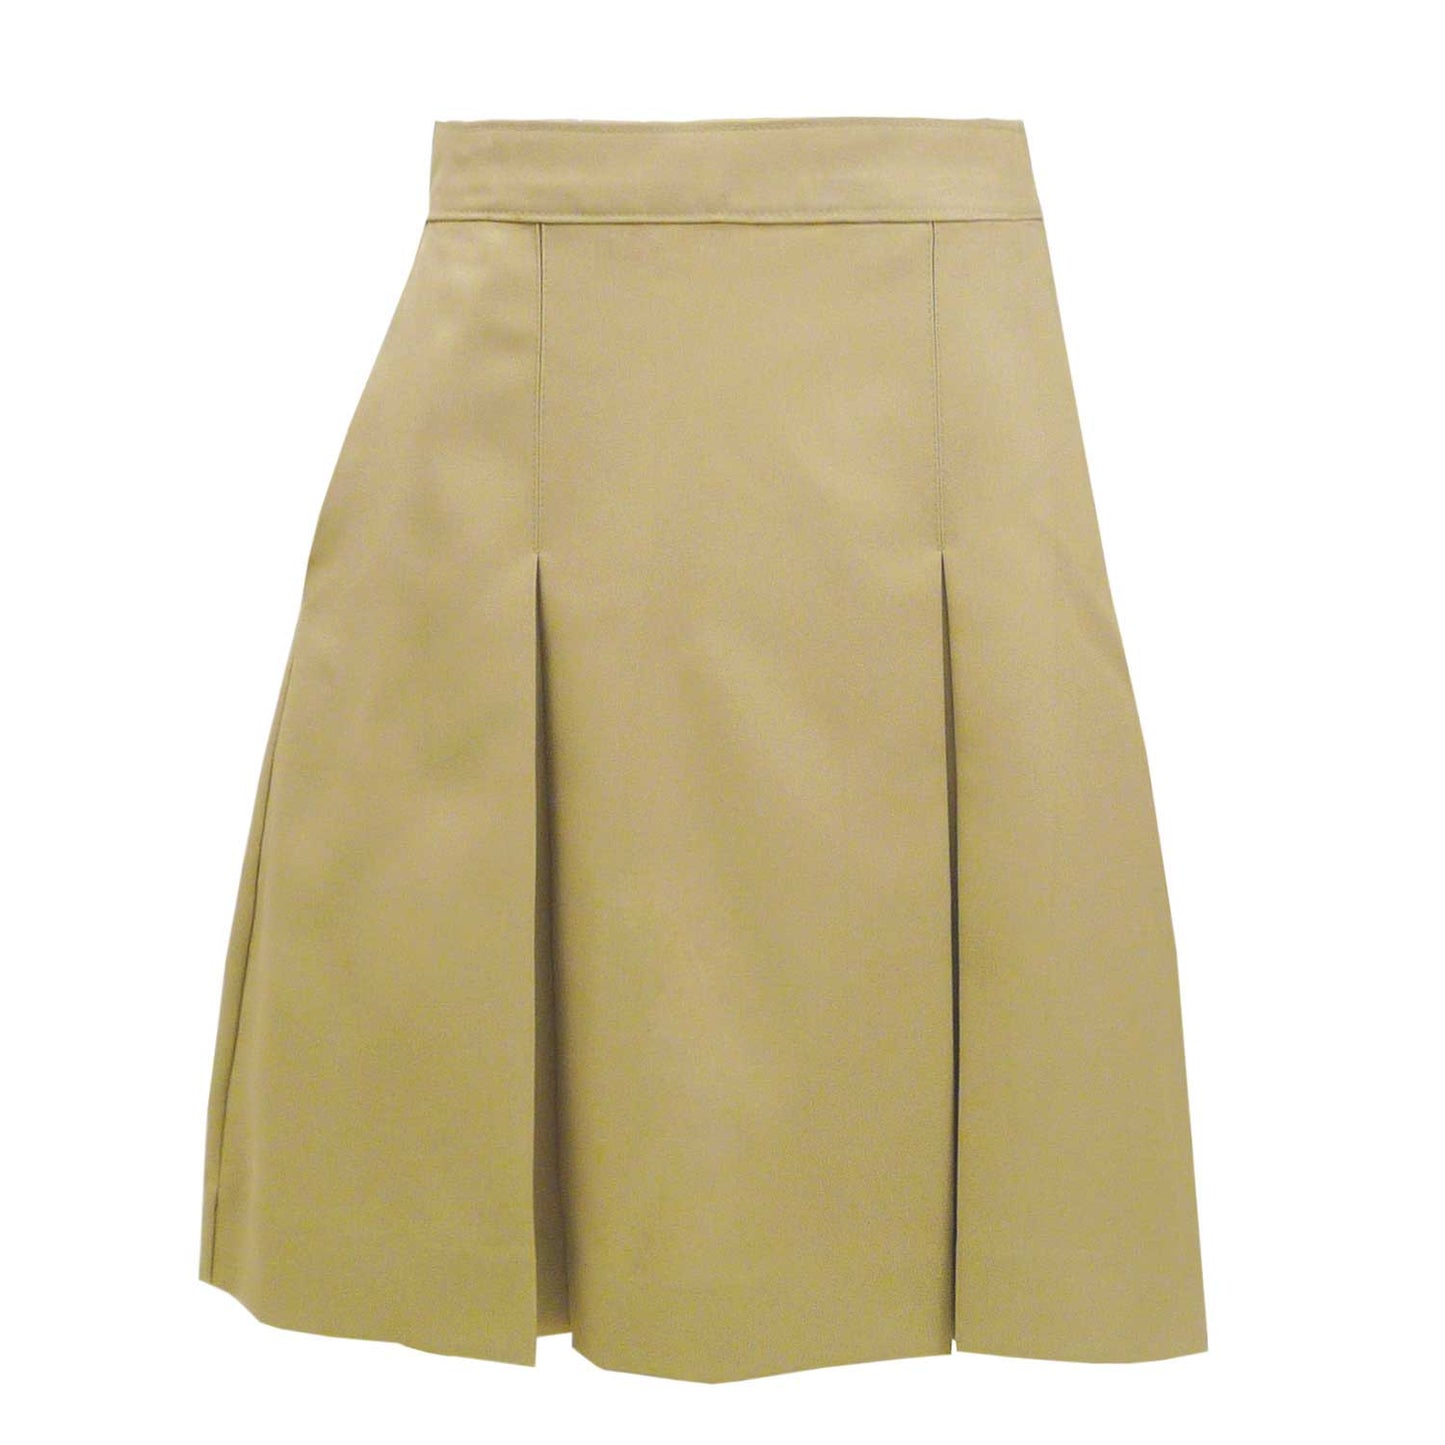 Skirt Model 34 - Blend Solids - 1103